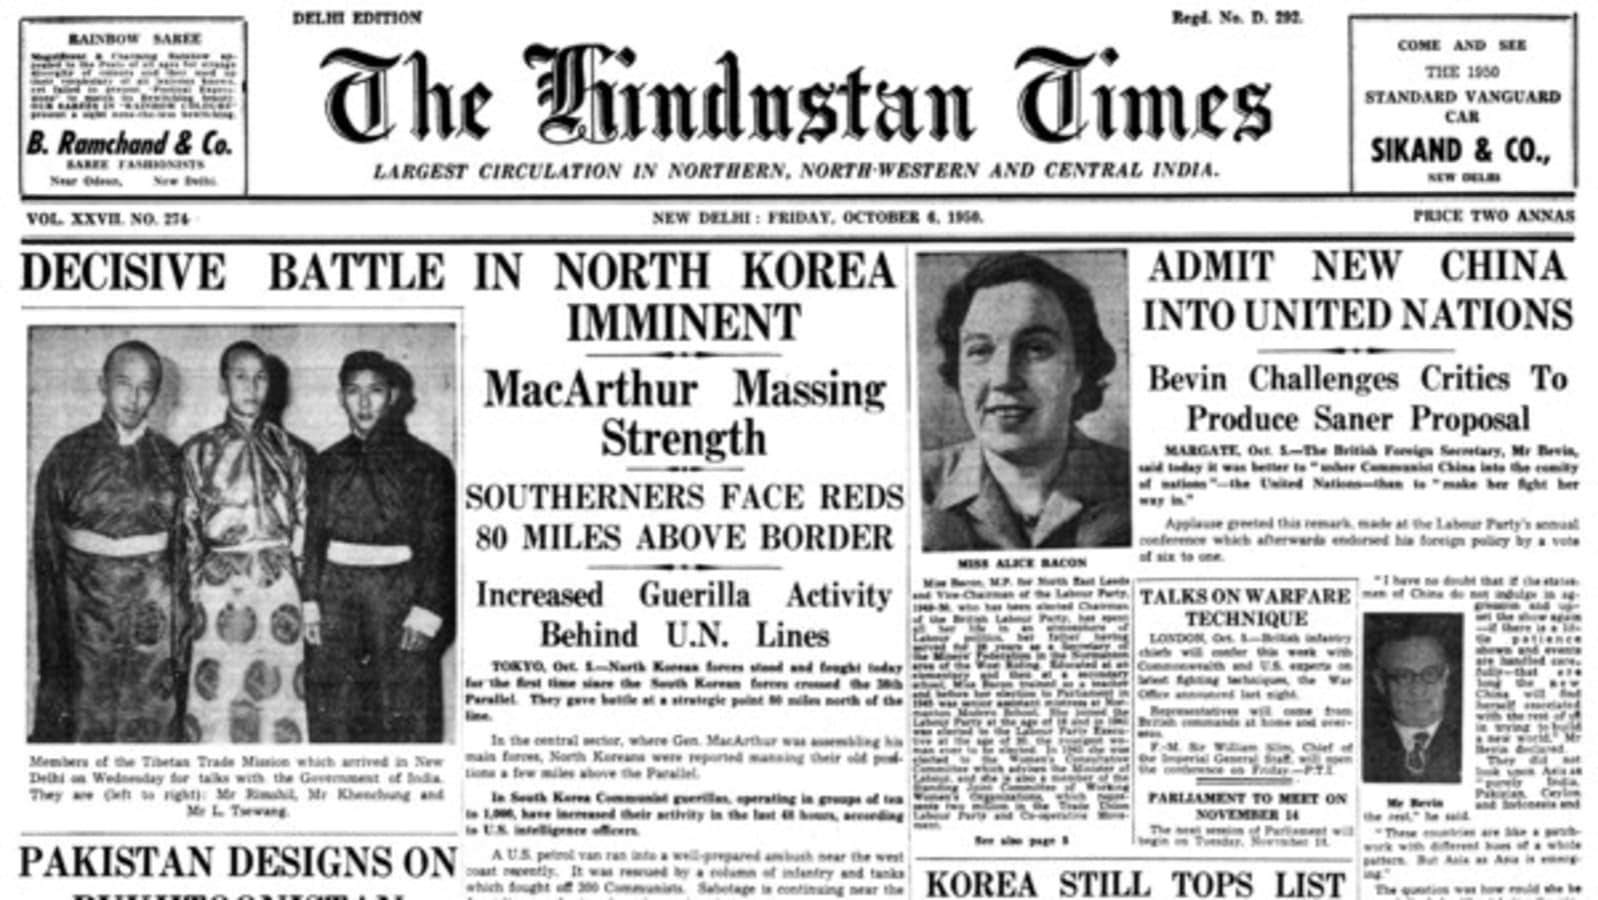 HT 이날 : 1950 년 10 월 6 일 – 북한에서 결정적인 전투가 임박하고 있습니다 | 월드 뉴스